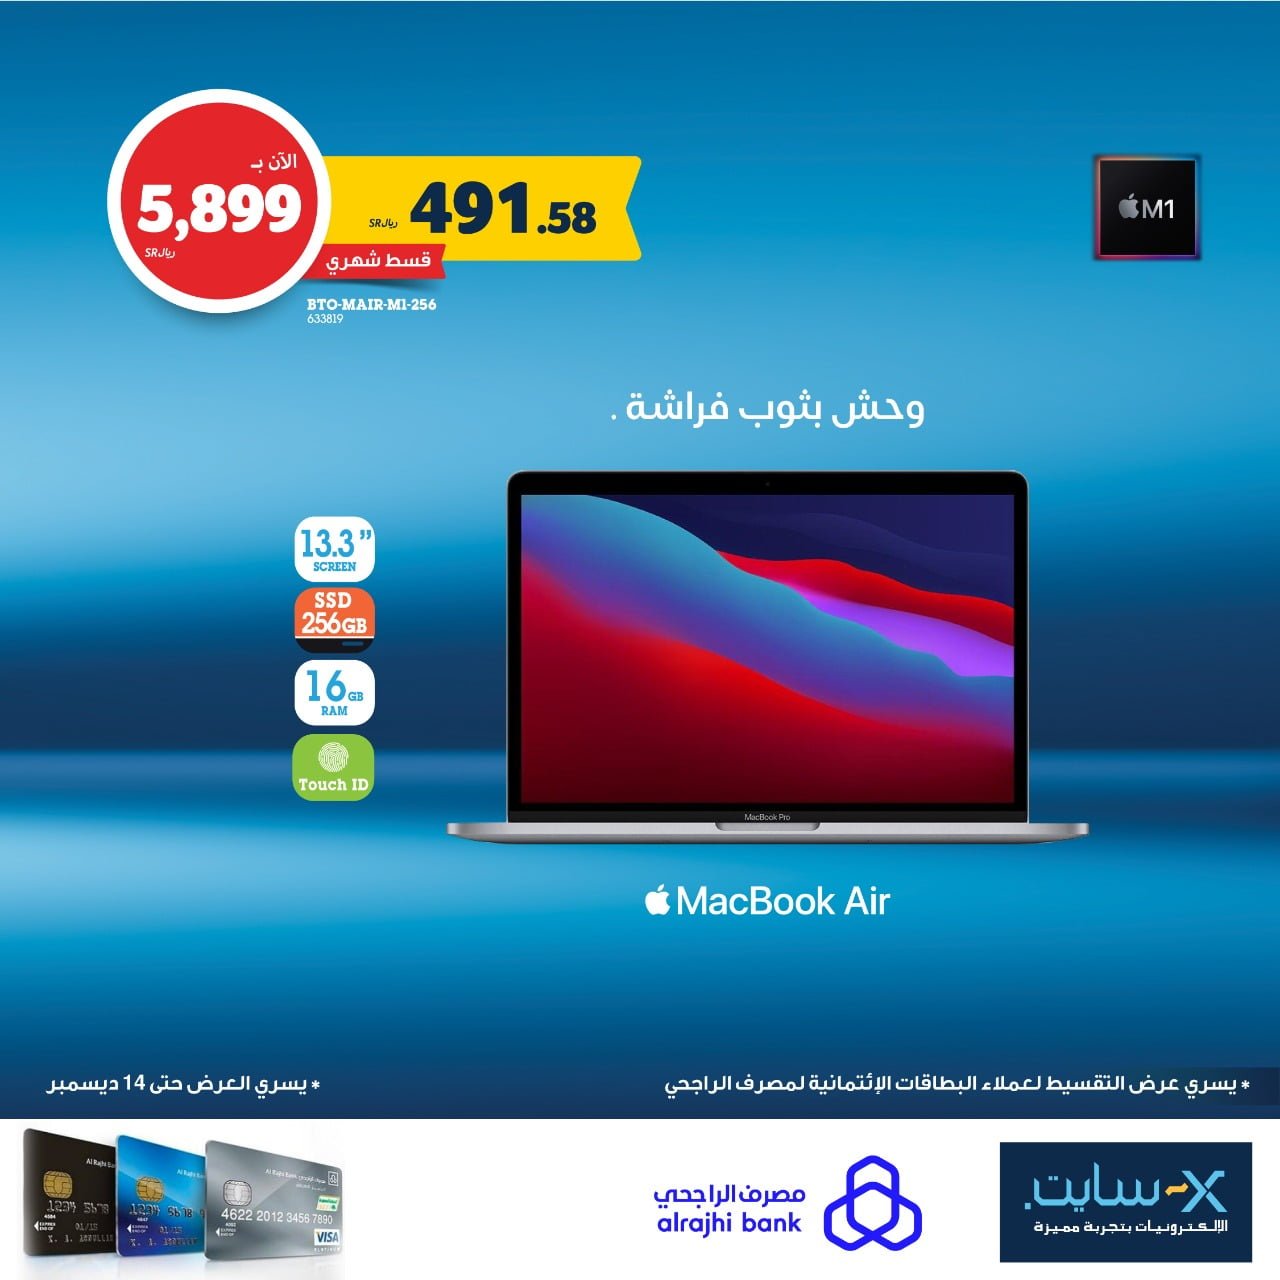 265624477 5277560698926341 4007421767023315691 n - اسعار أجهزة iPad و MacBook في اكسايت السعودية